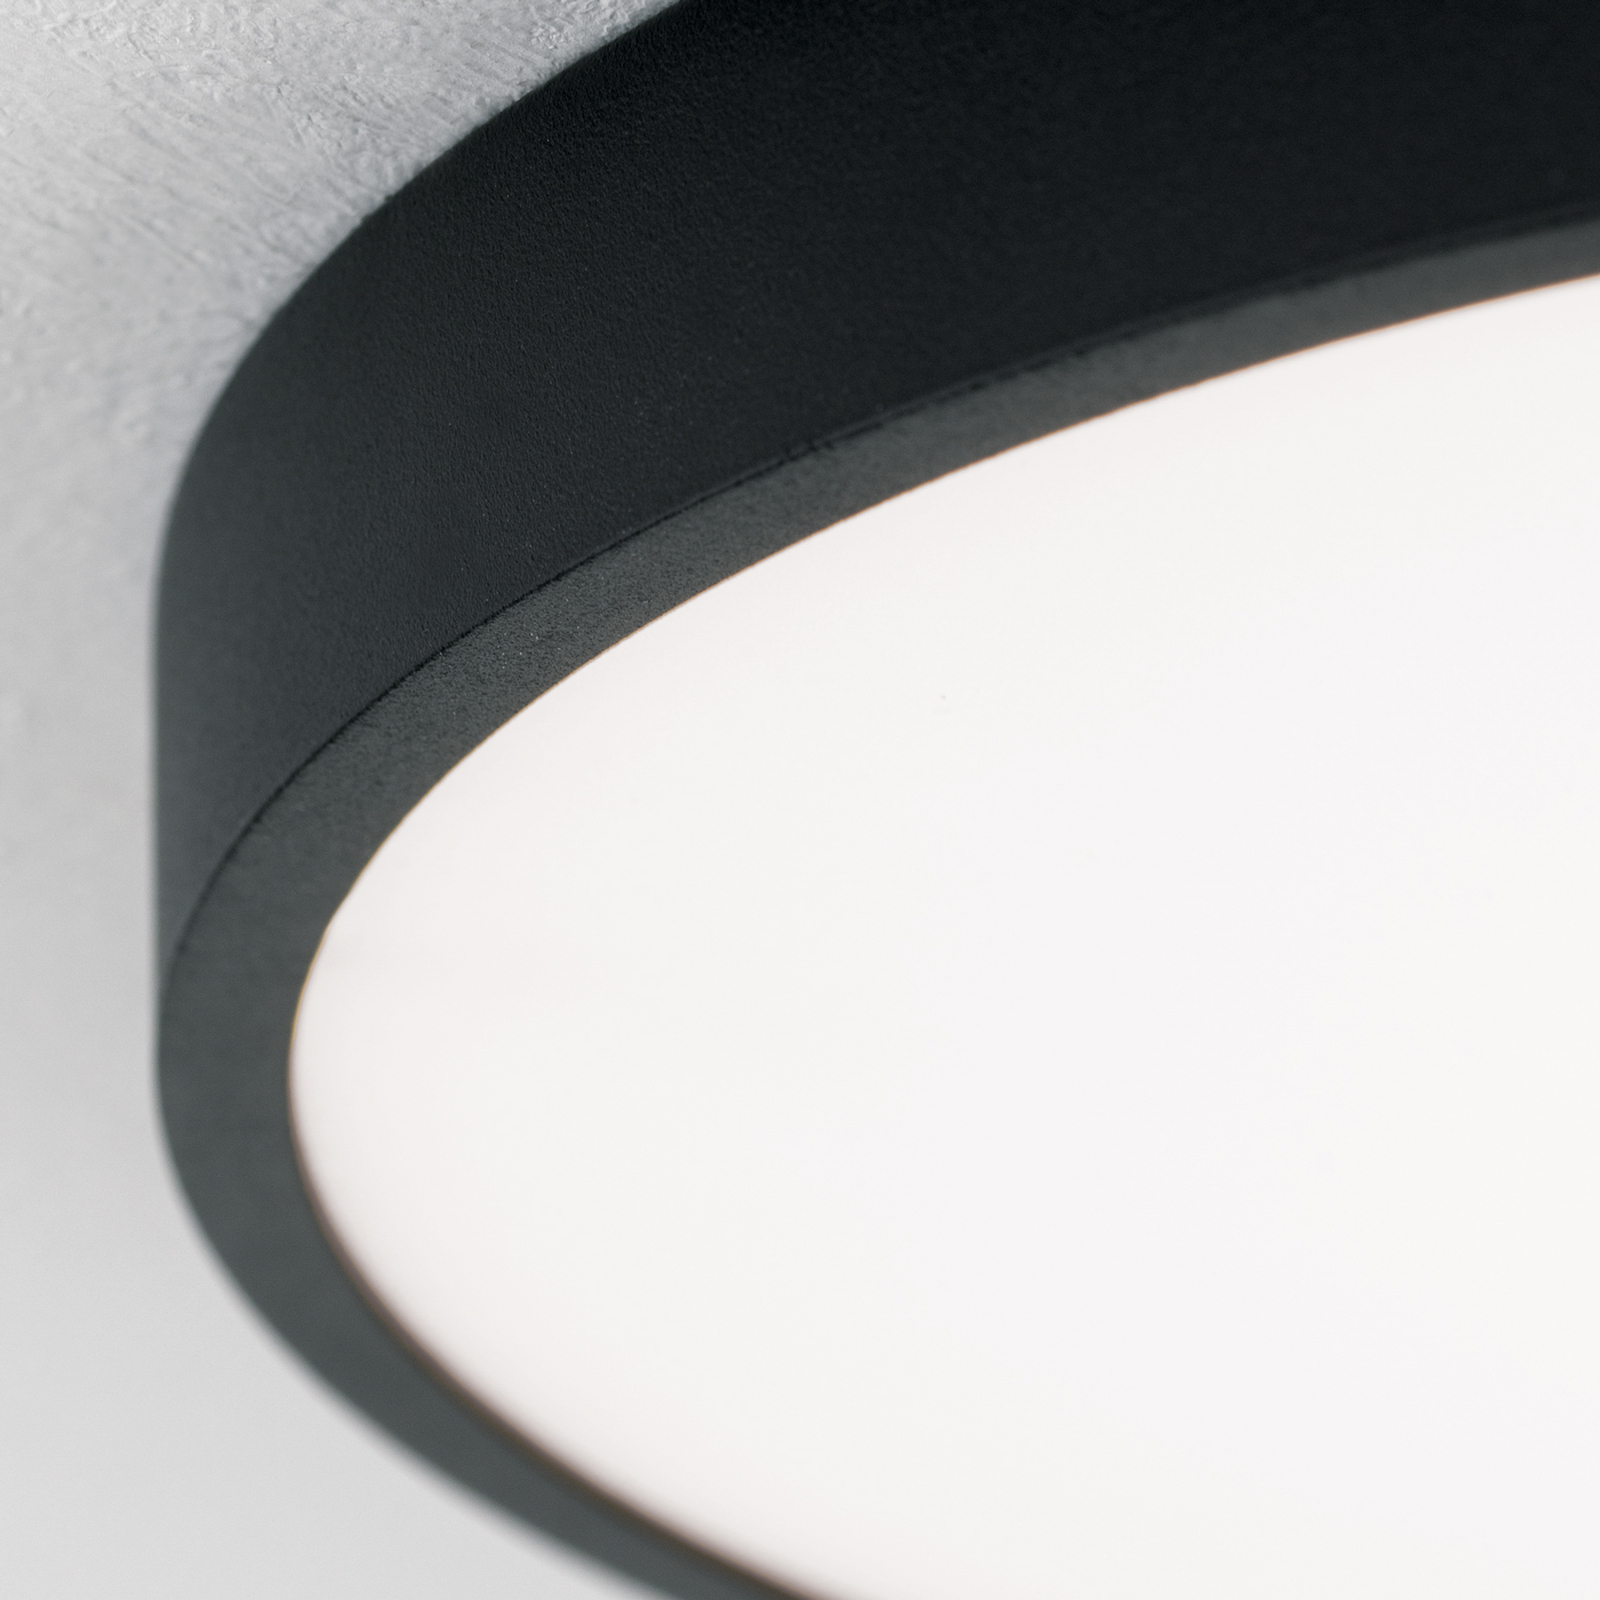 LED ceiling light Bully in black, 3,000 K, Ø28cm